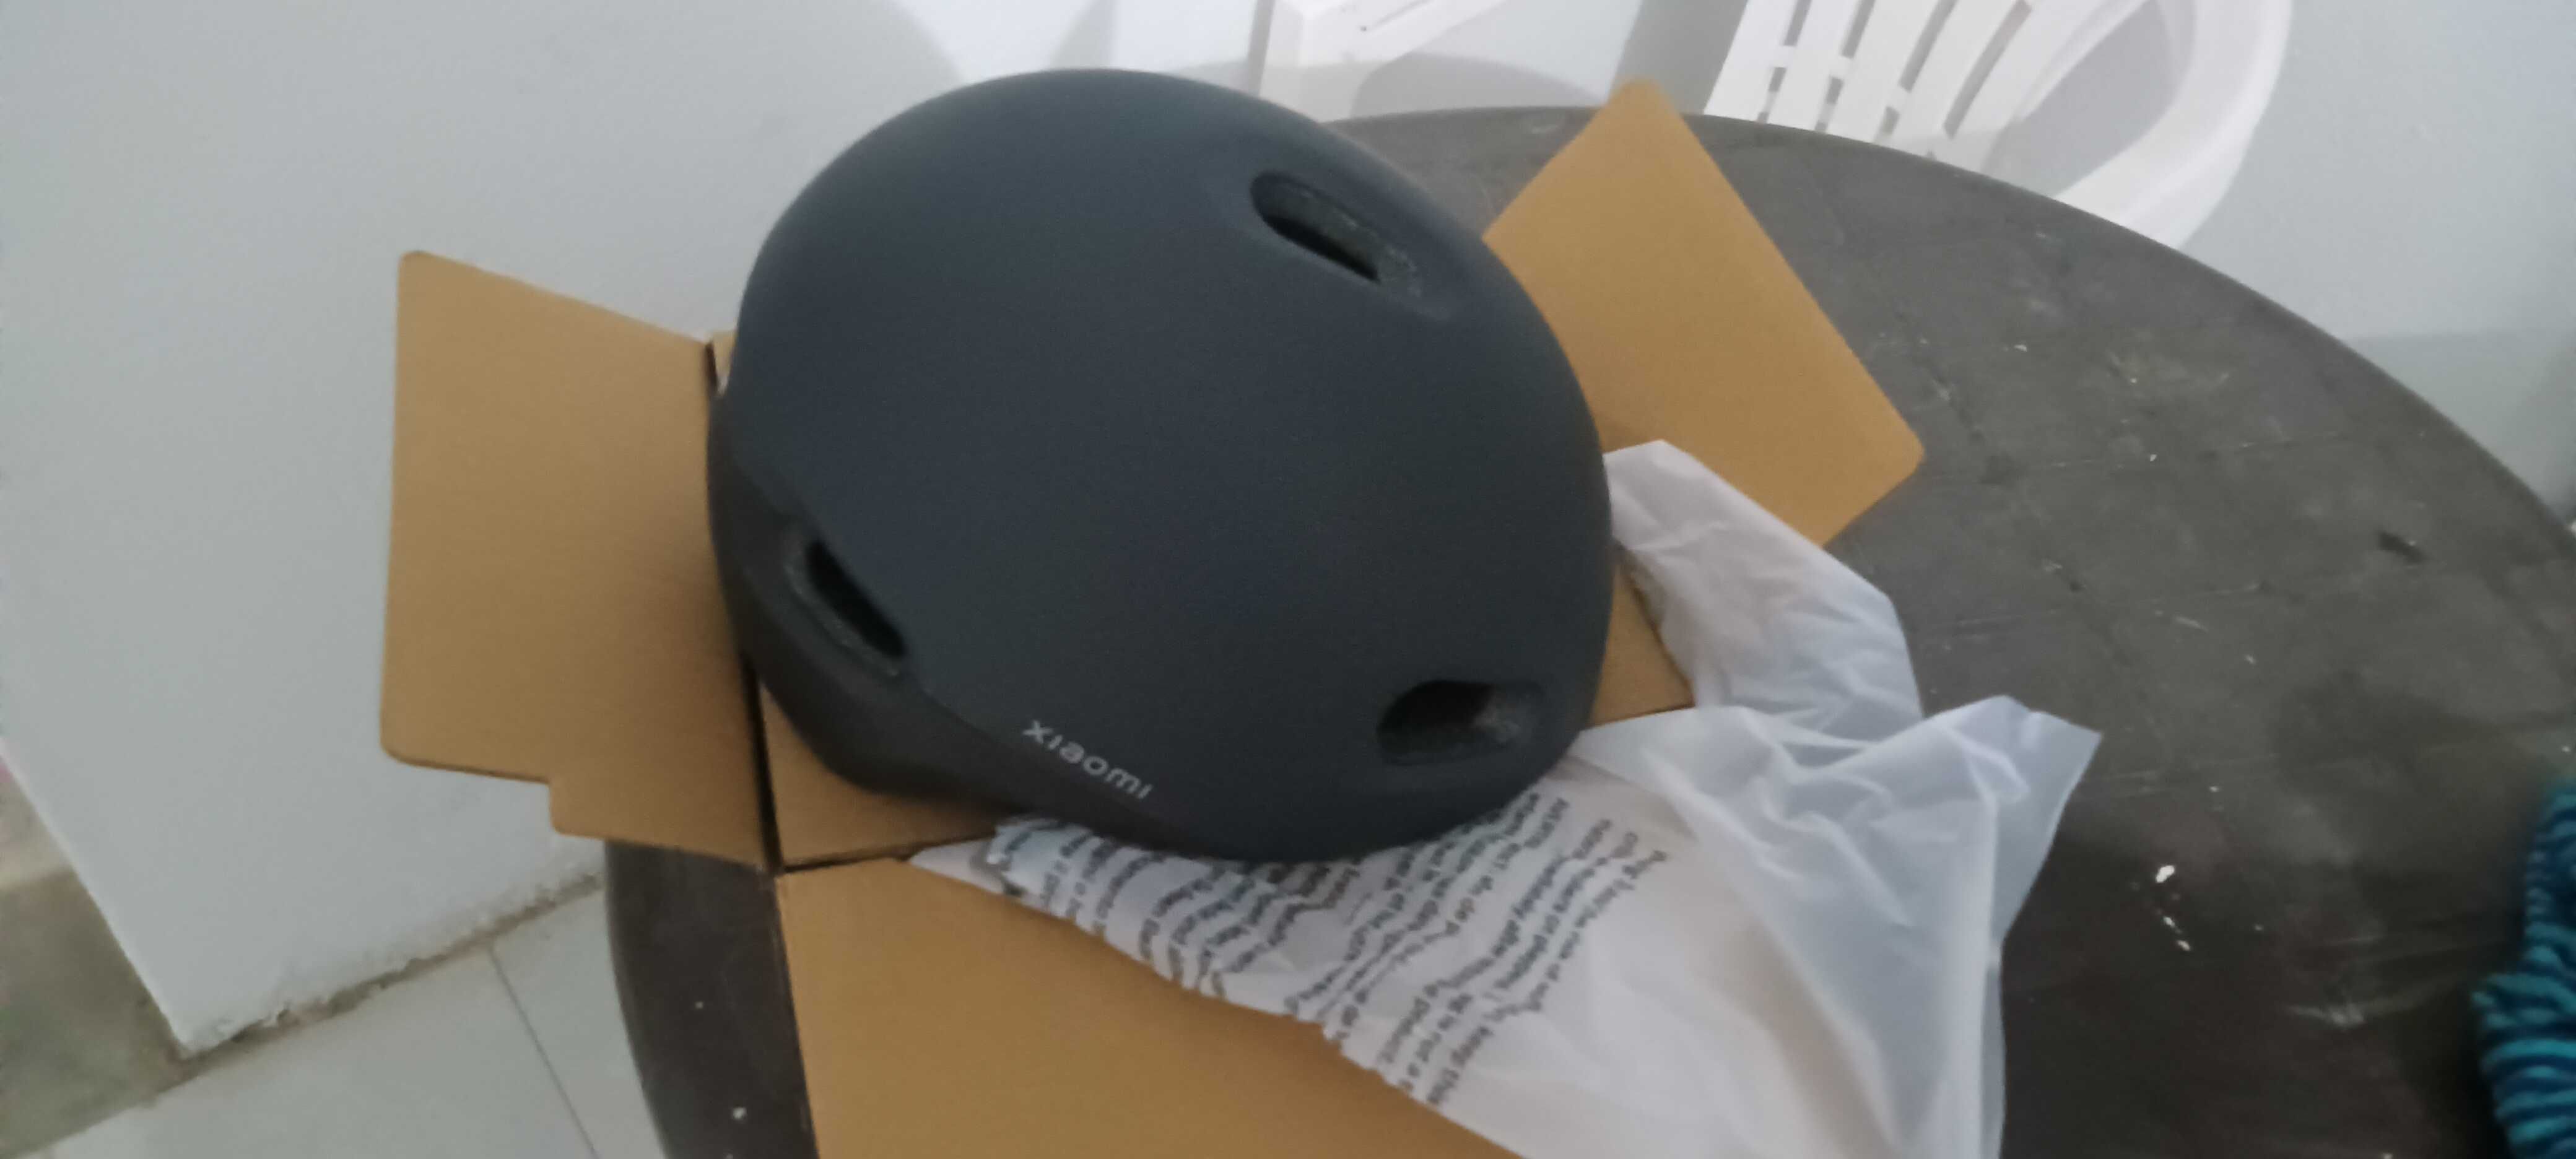 Trotinete elétrica Xiaomi 4 + capacete